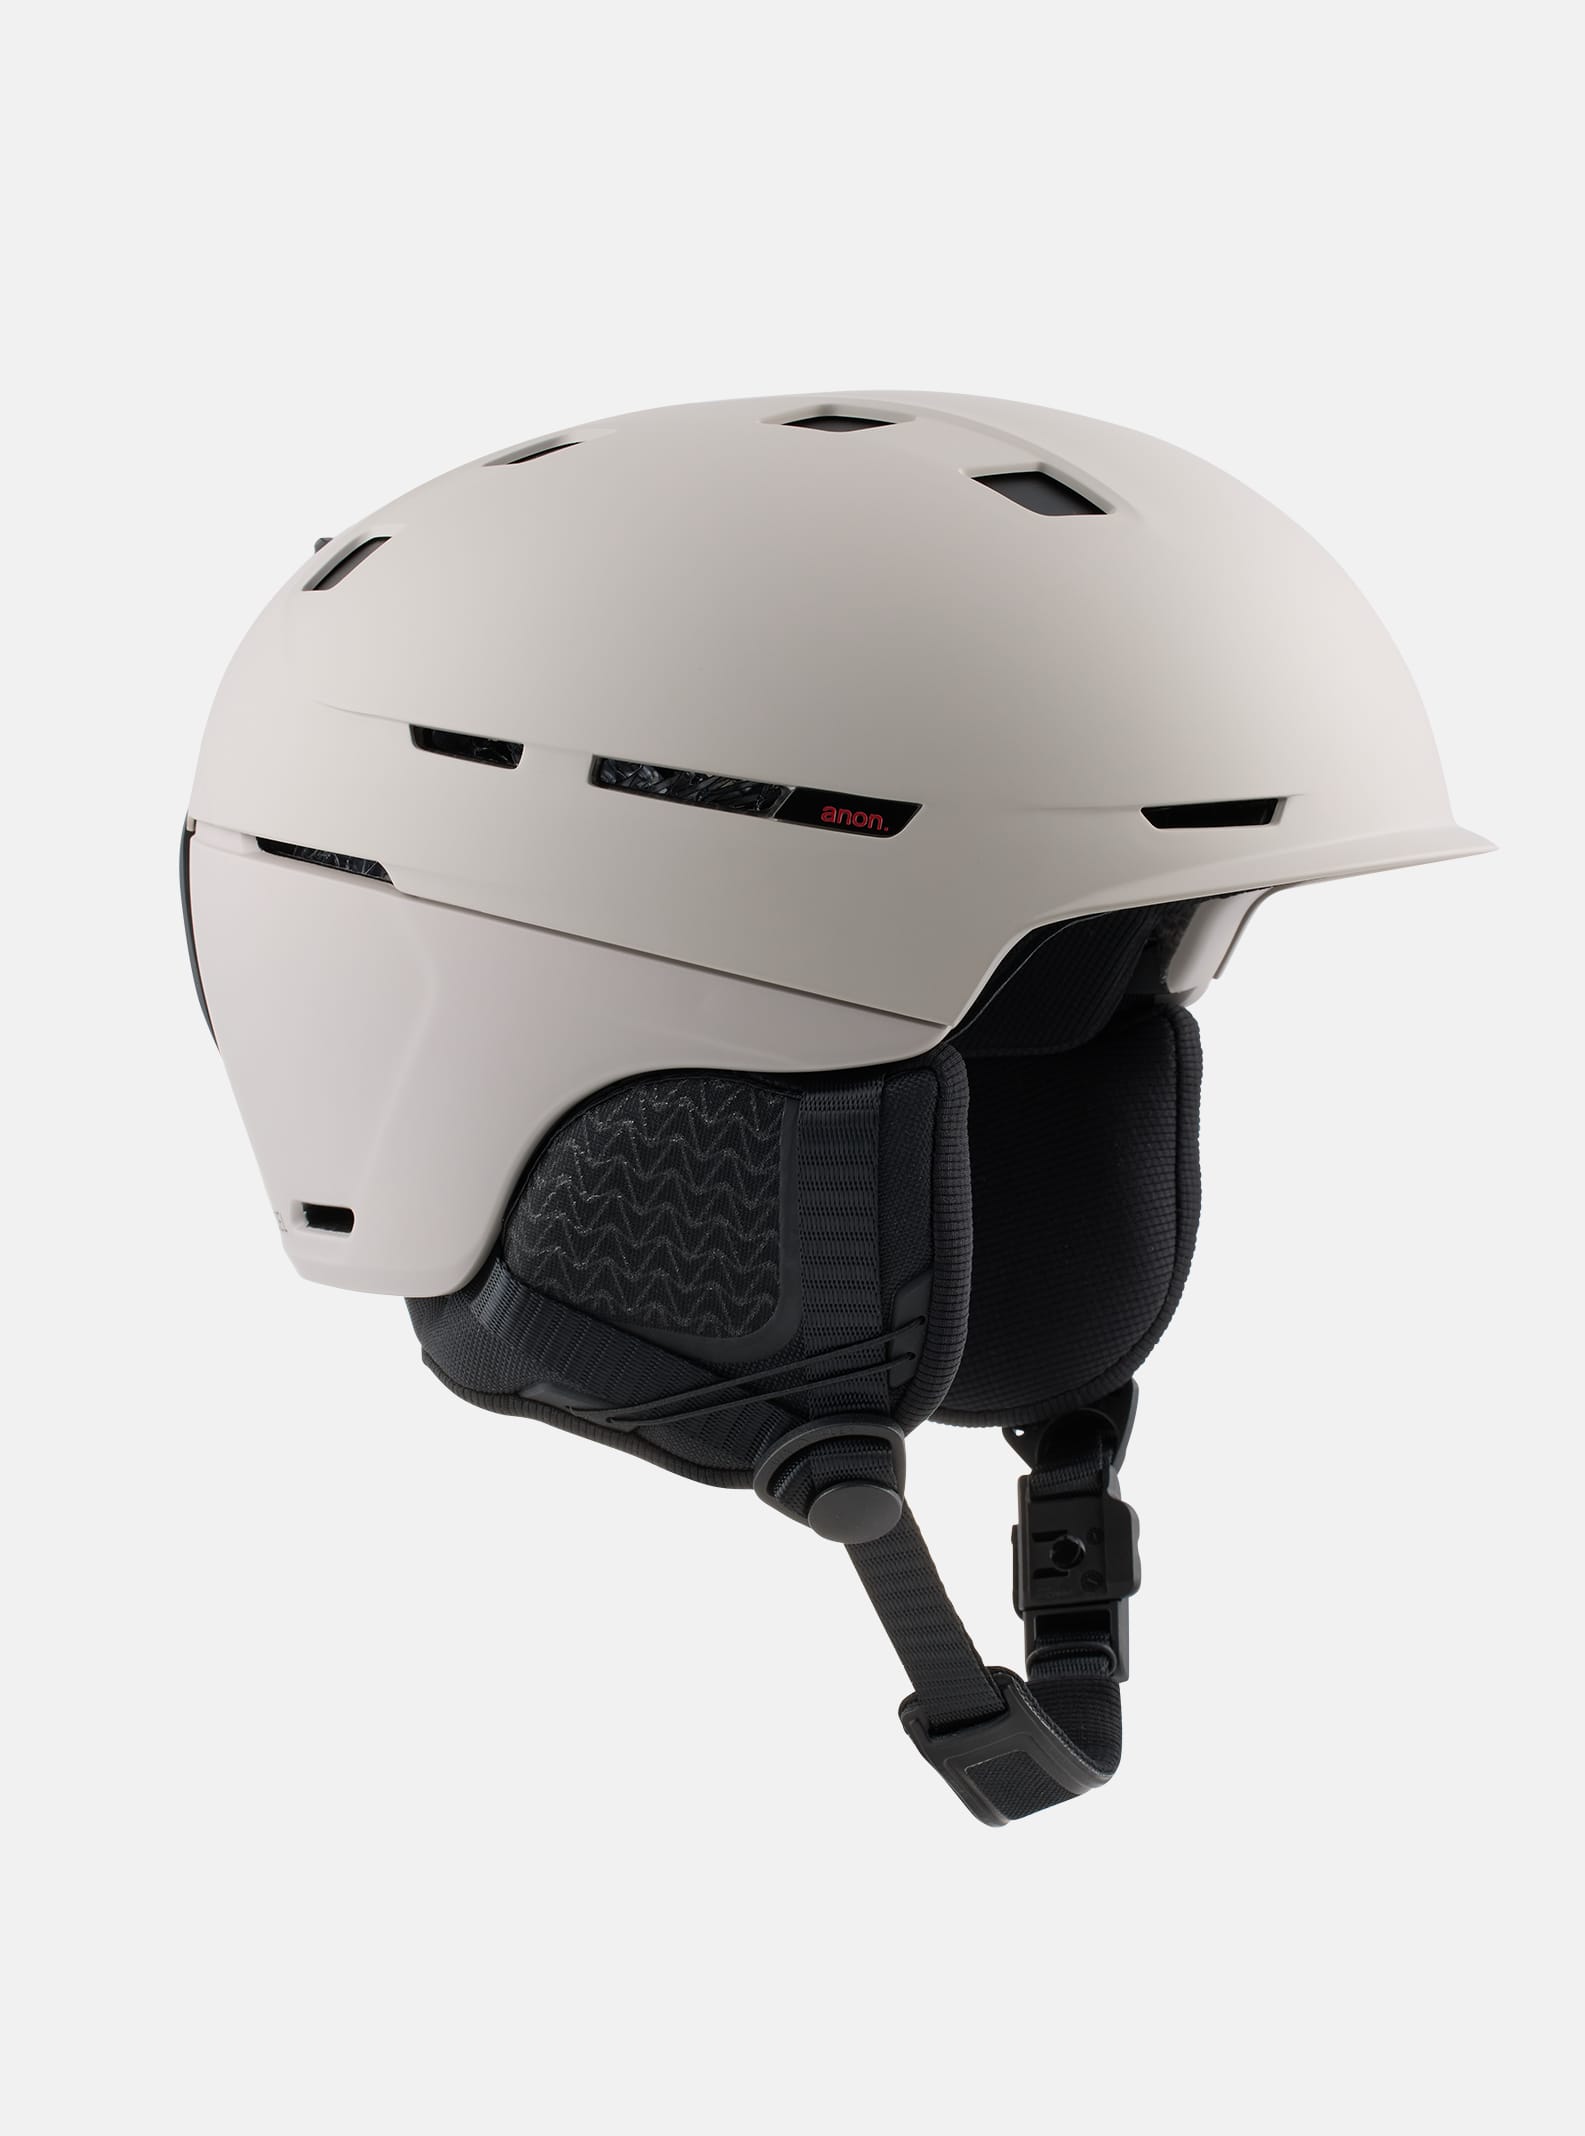 Anon Merak WaveCel スキー&スノーボード ヘルメット